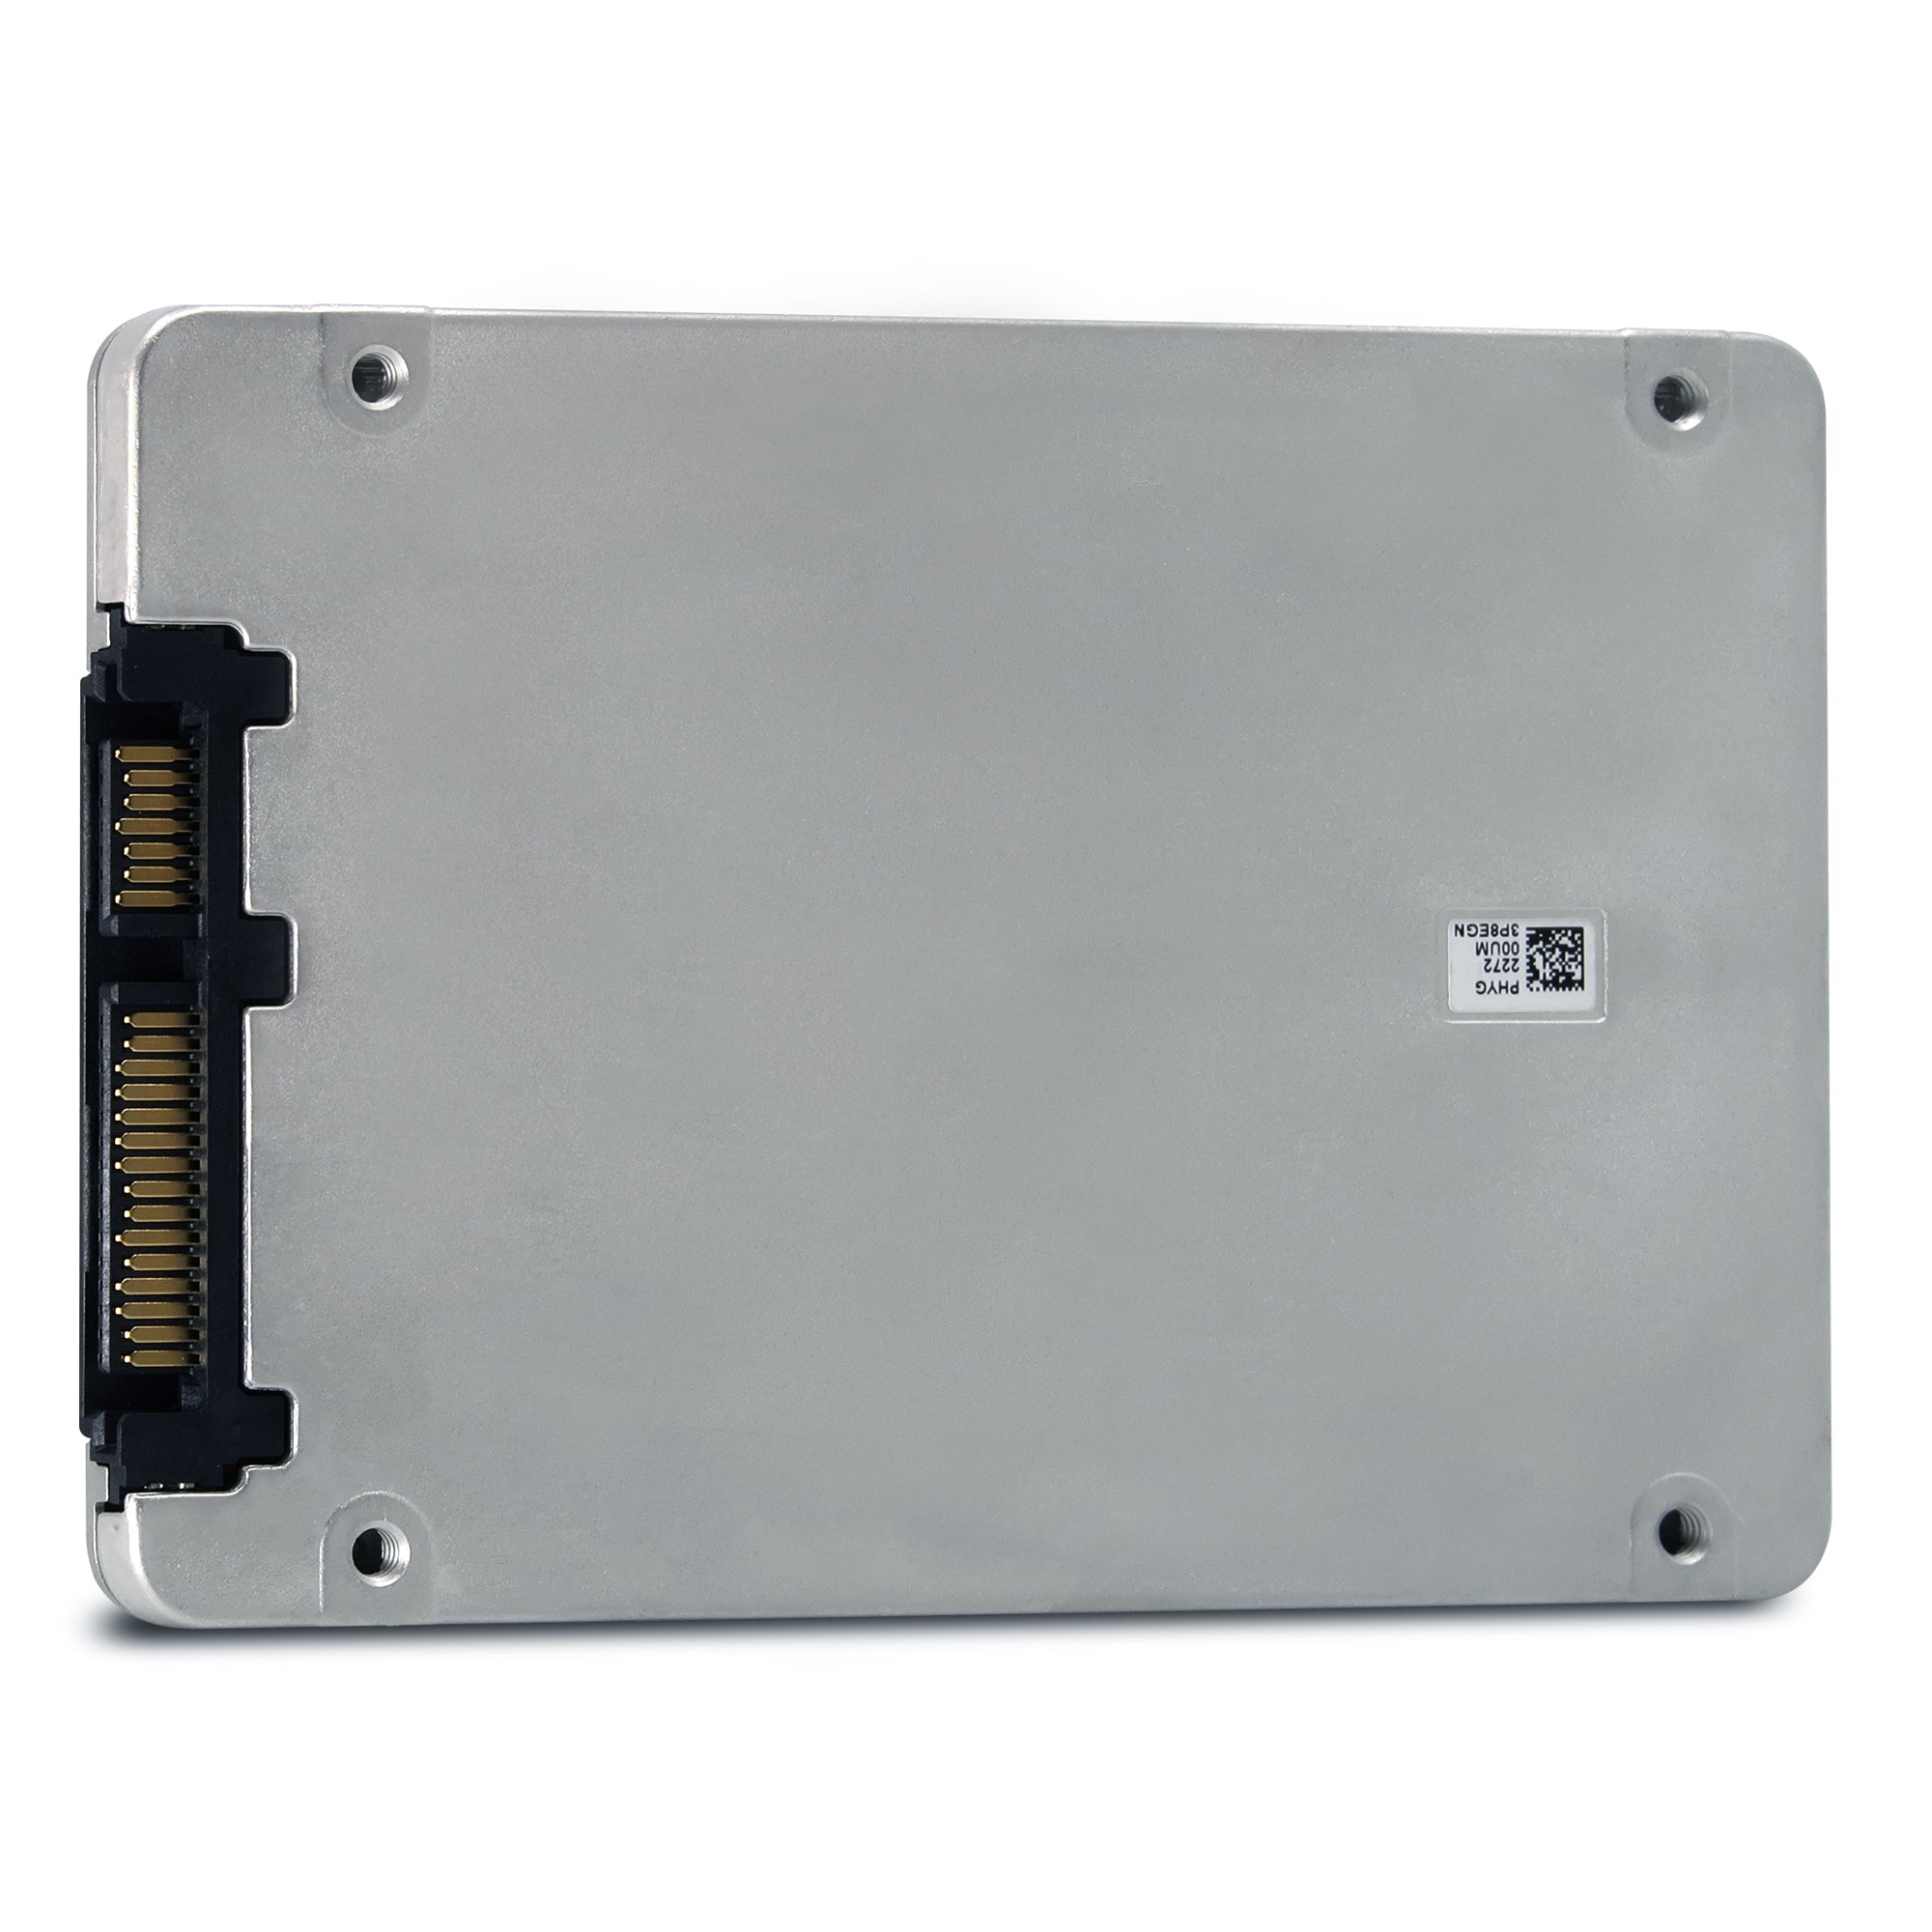 SSDSC2KG019T8 P05960-004 1.92TB Solid State Drive